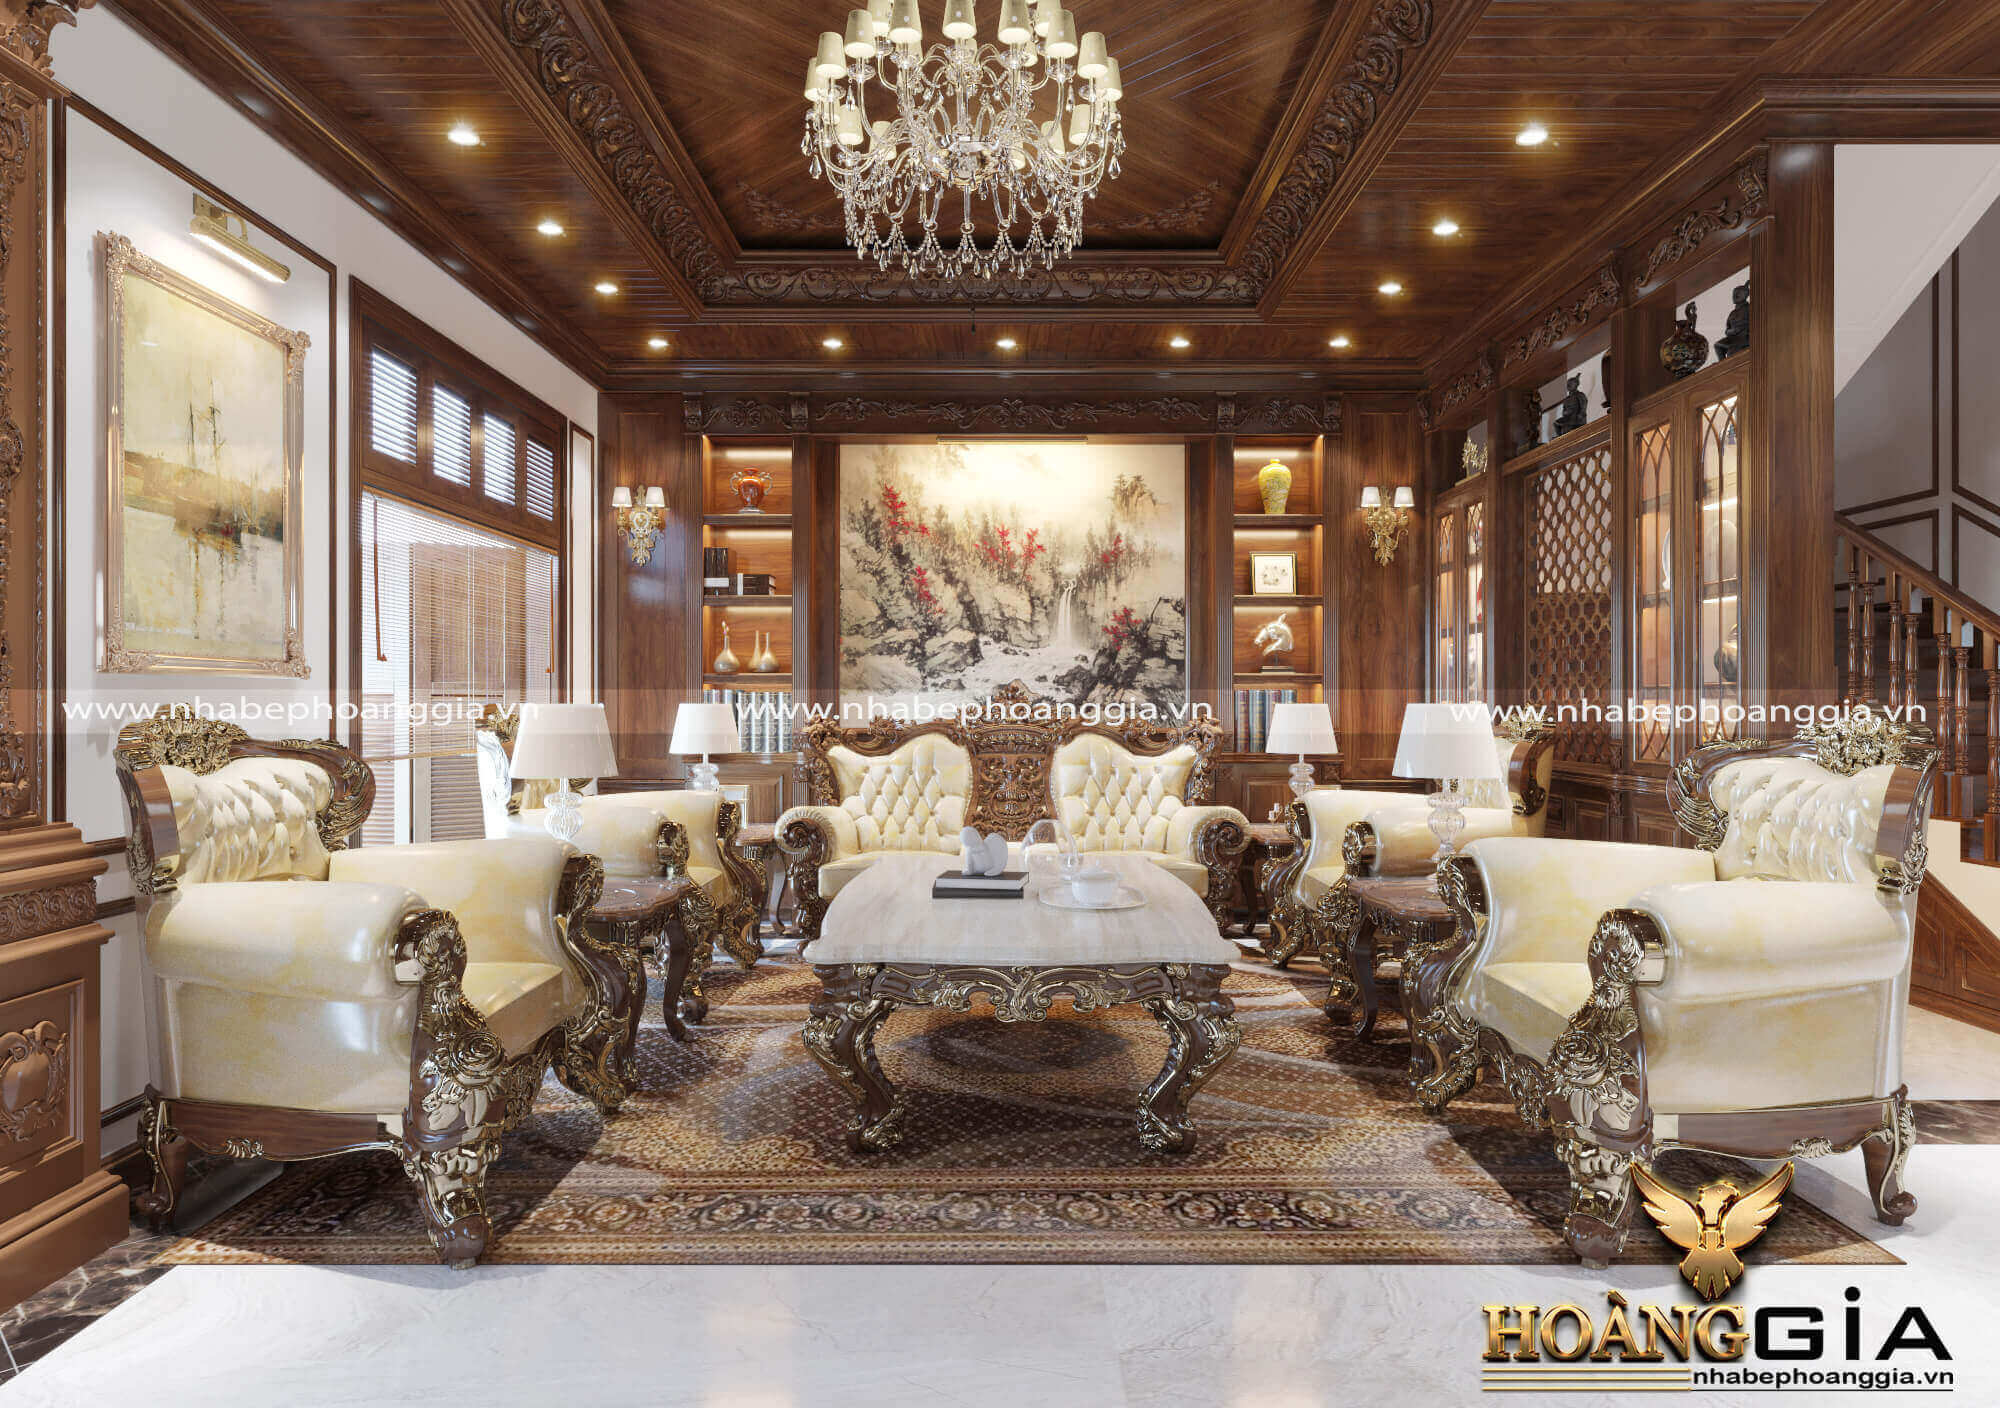 Top 10 Mẫu thiết kế nội thất phòng khách tân cổ điển sang trọng